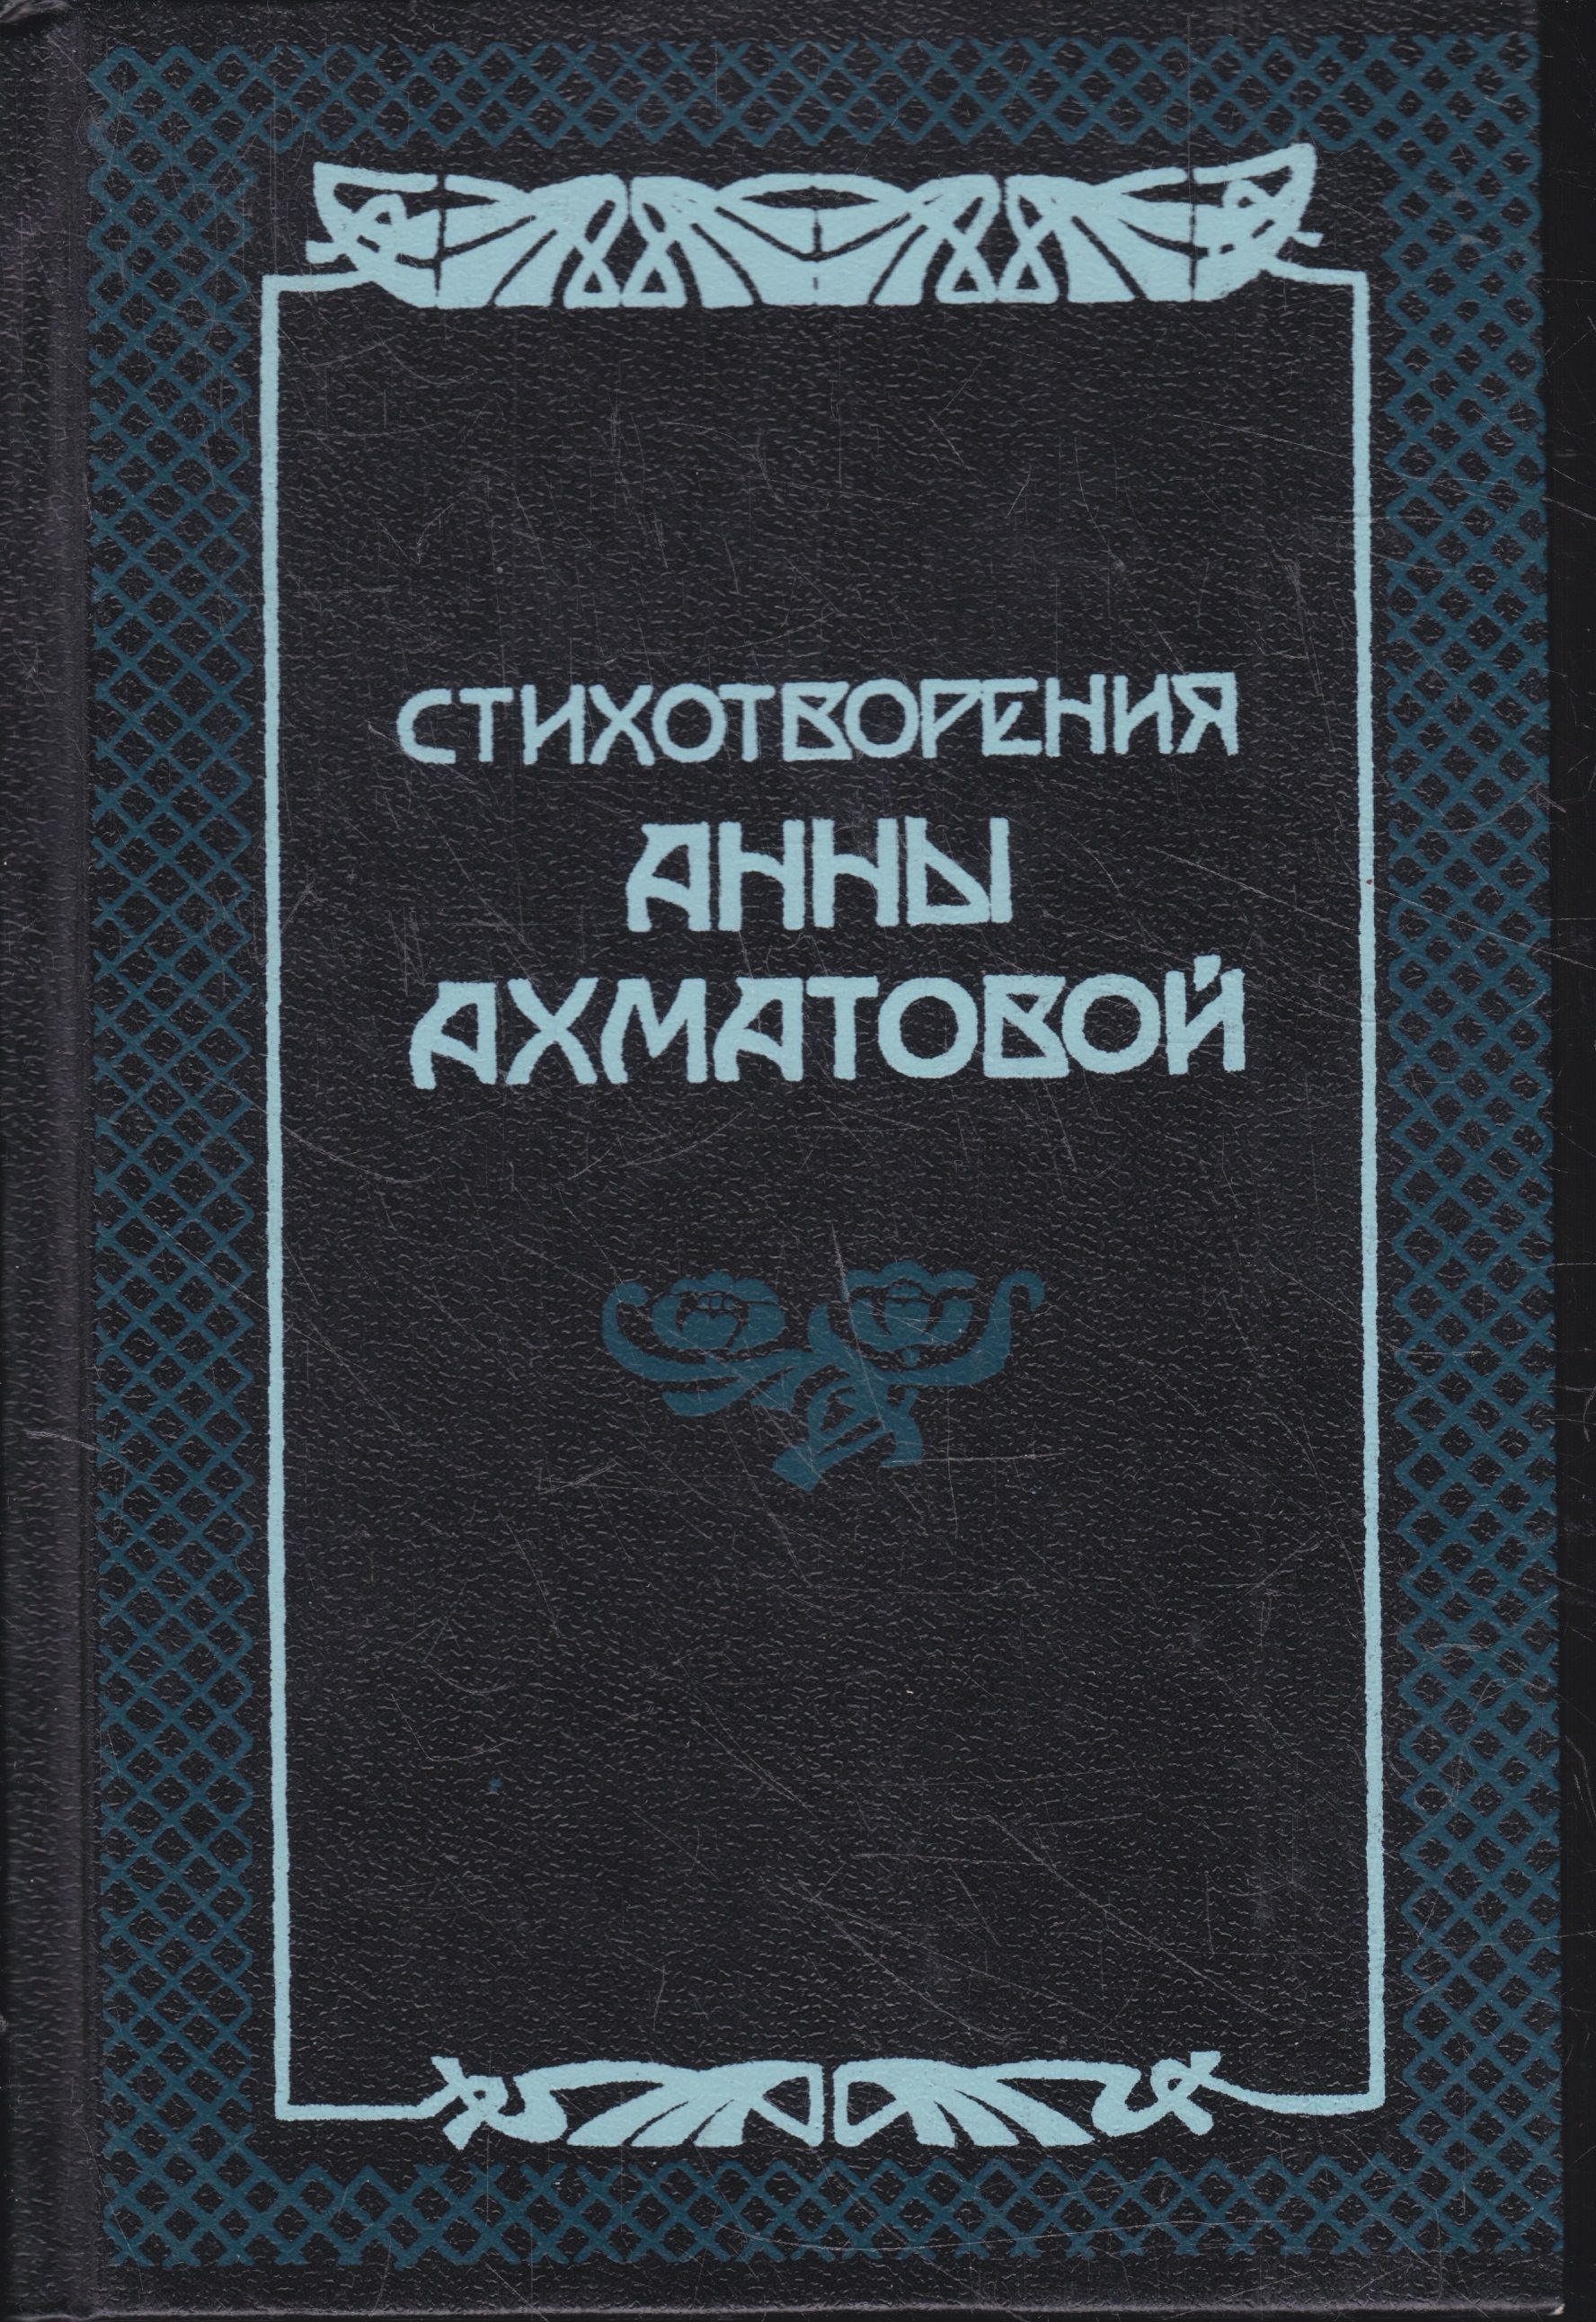 Первые сборники ахматовой назывались. Сборник стихотворений Ахматовой. Ахматова стихи книга.